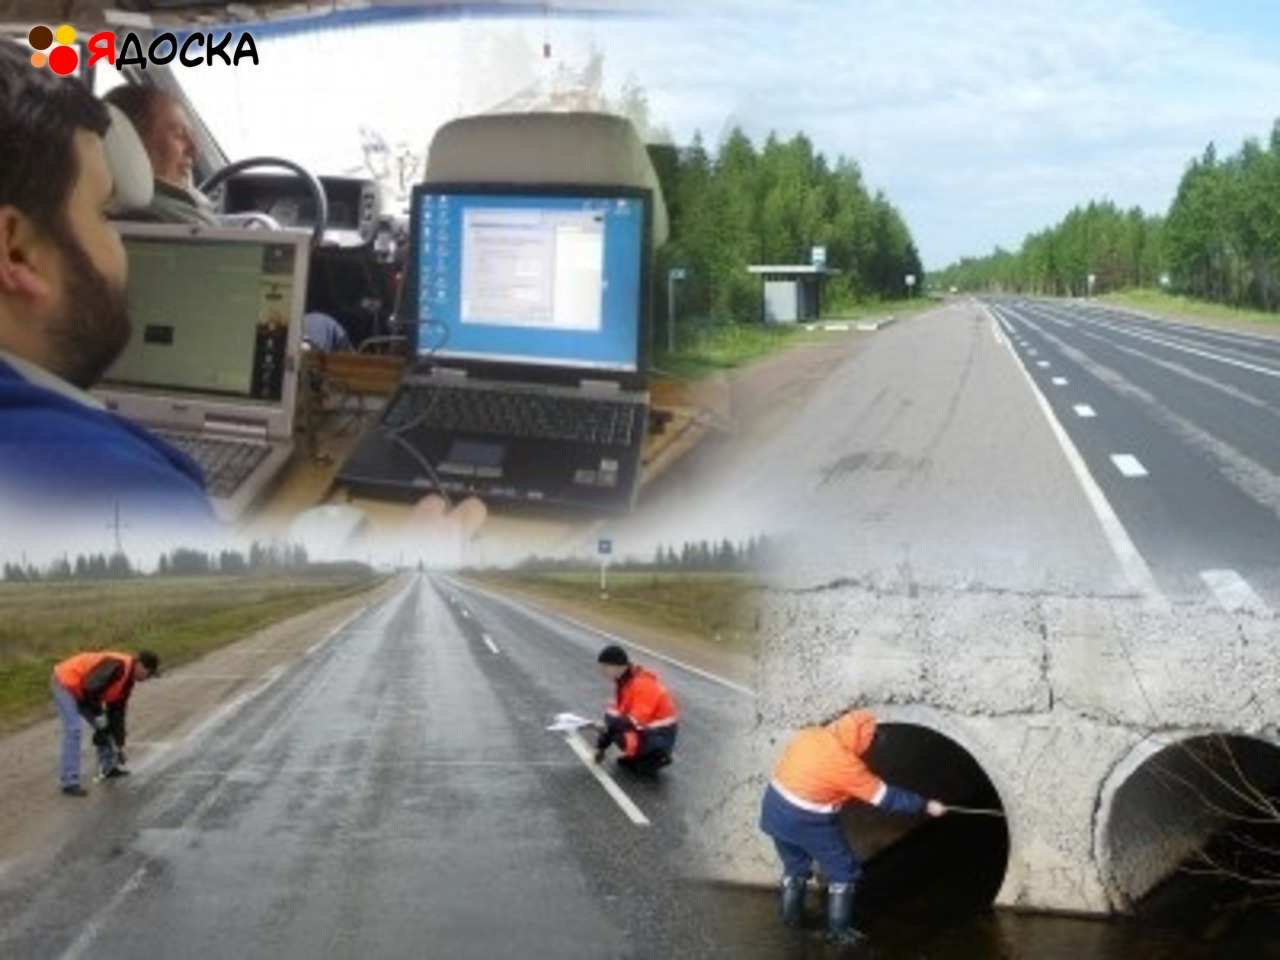 Оценка состояния автомобильных дорог в Красноярске - 1